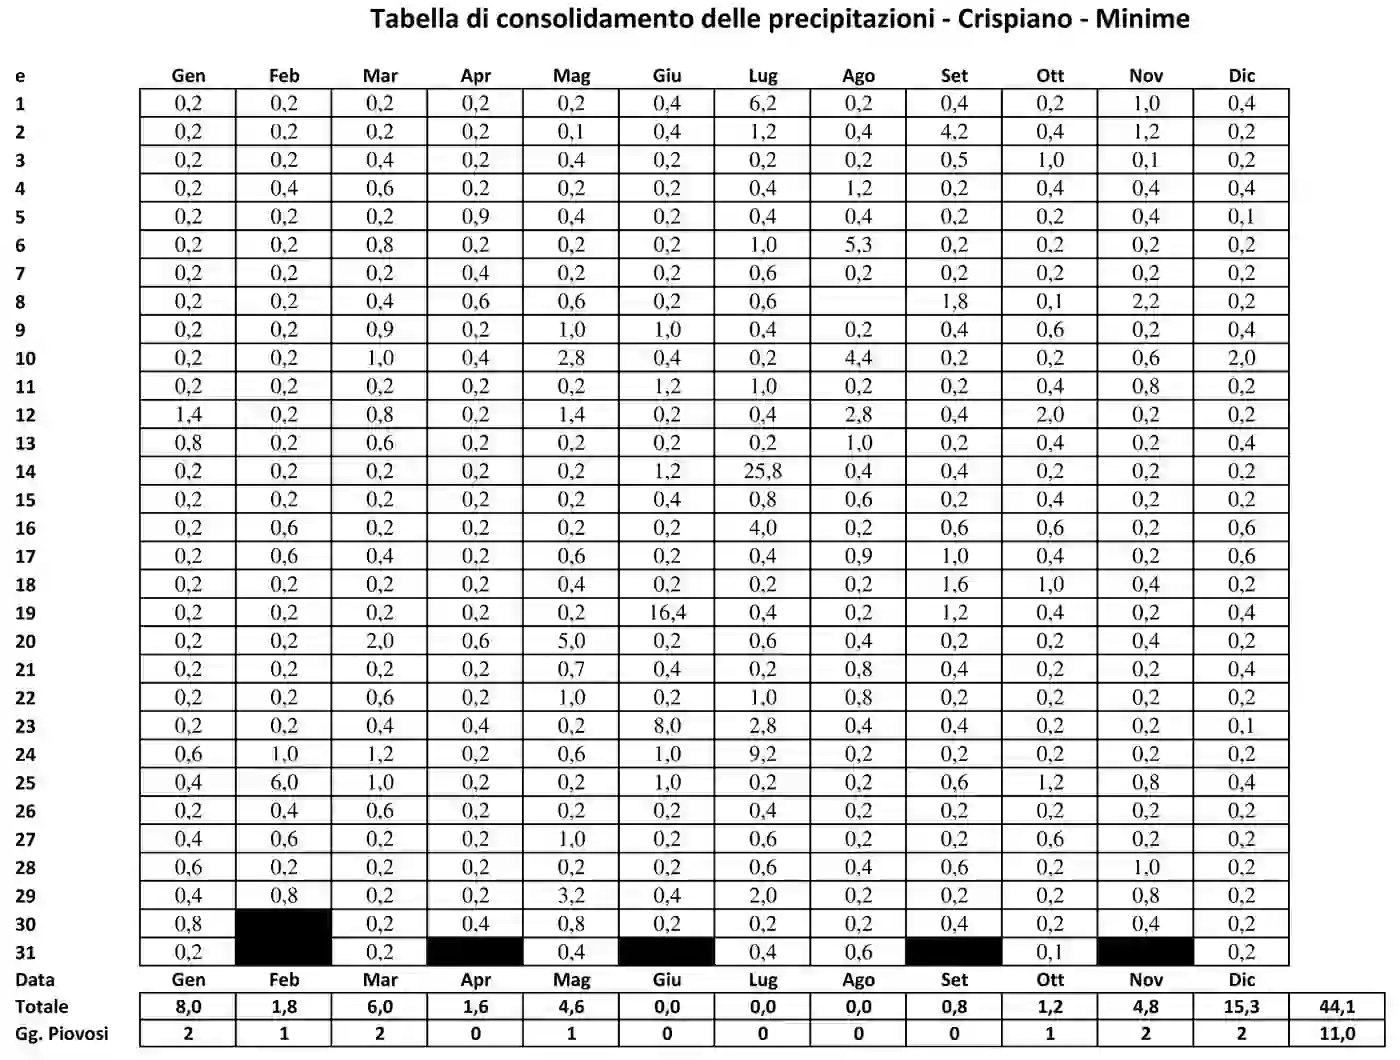 Tabella di consolidamento delle precipitazioni minime di Crispiano